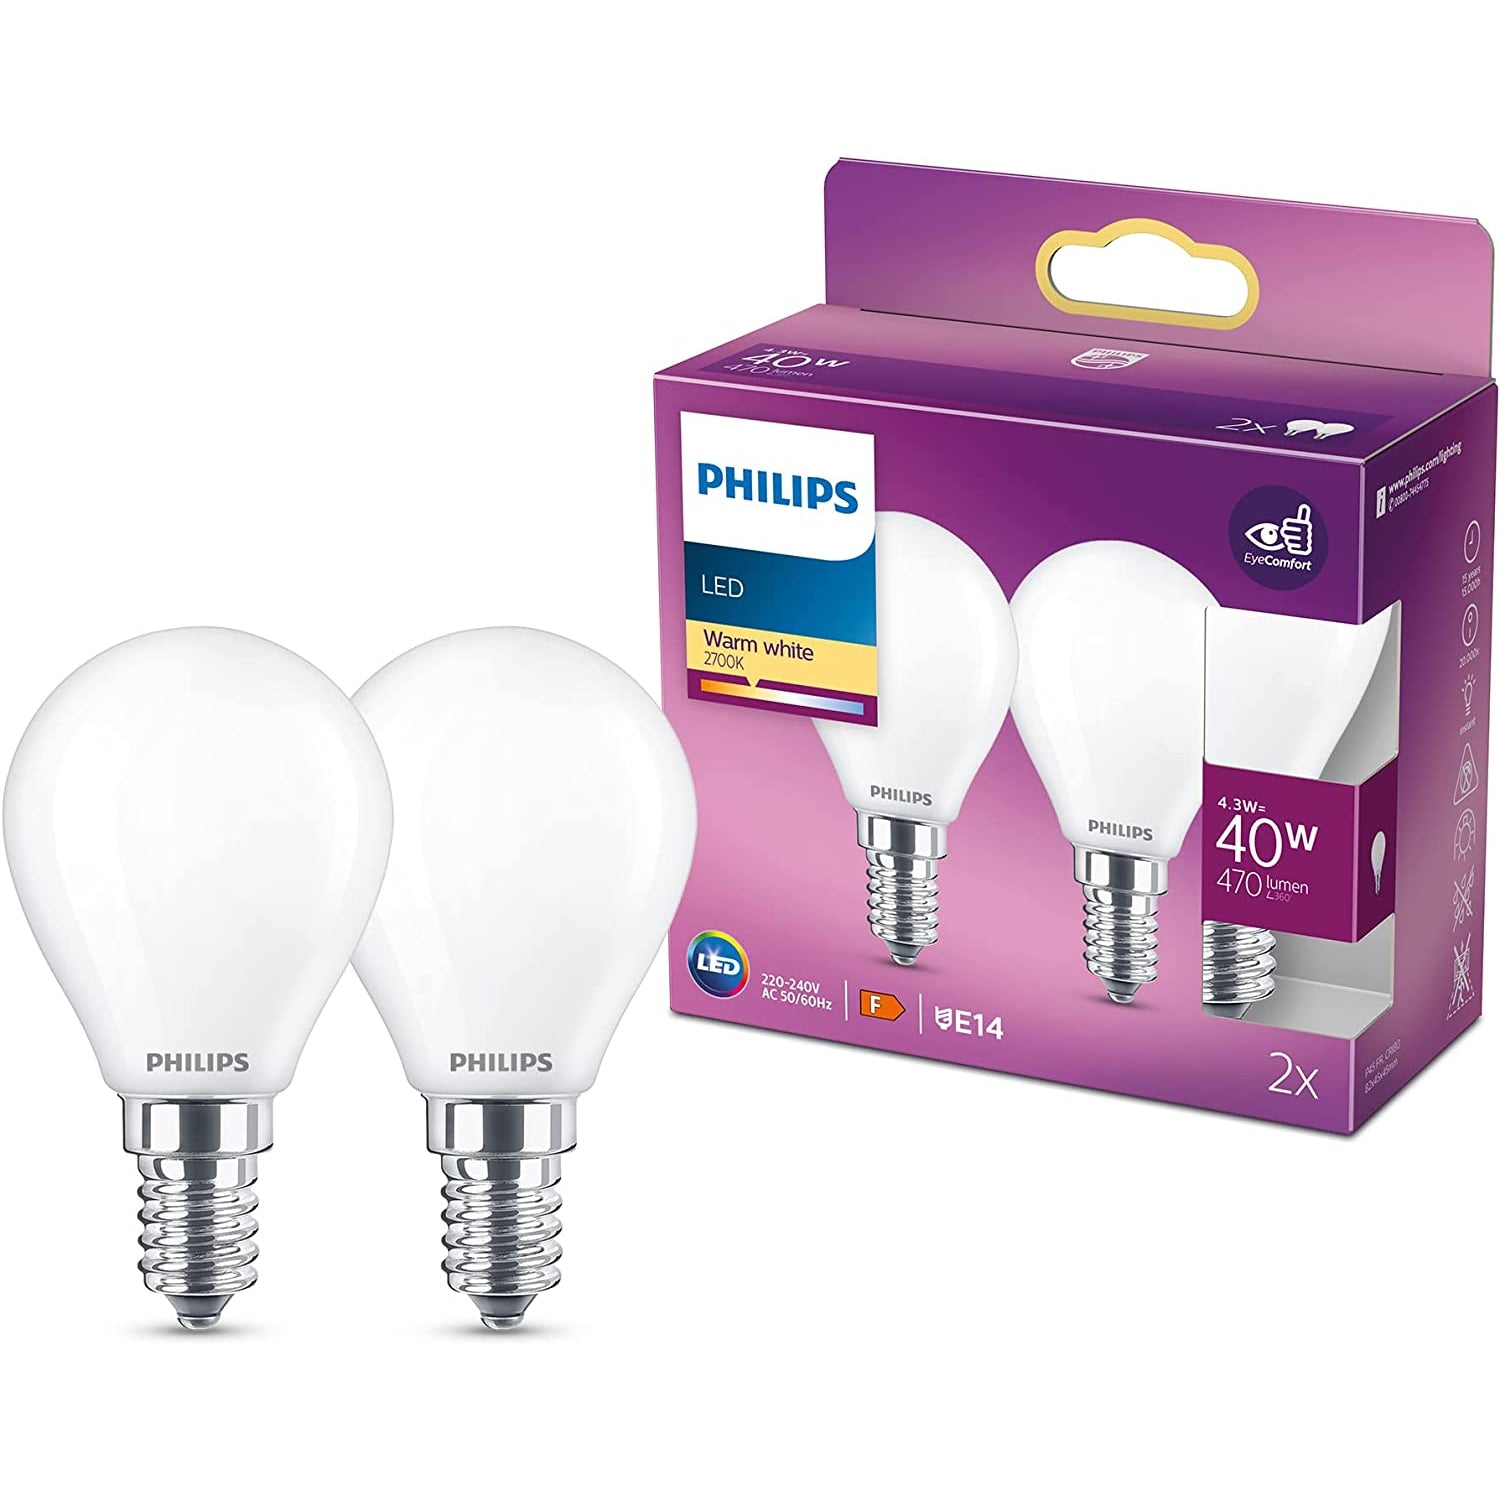 Philips LED Warm White 40W 470 Lumen LED Golf Ball Light Bulbs - 2 Pack